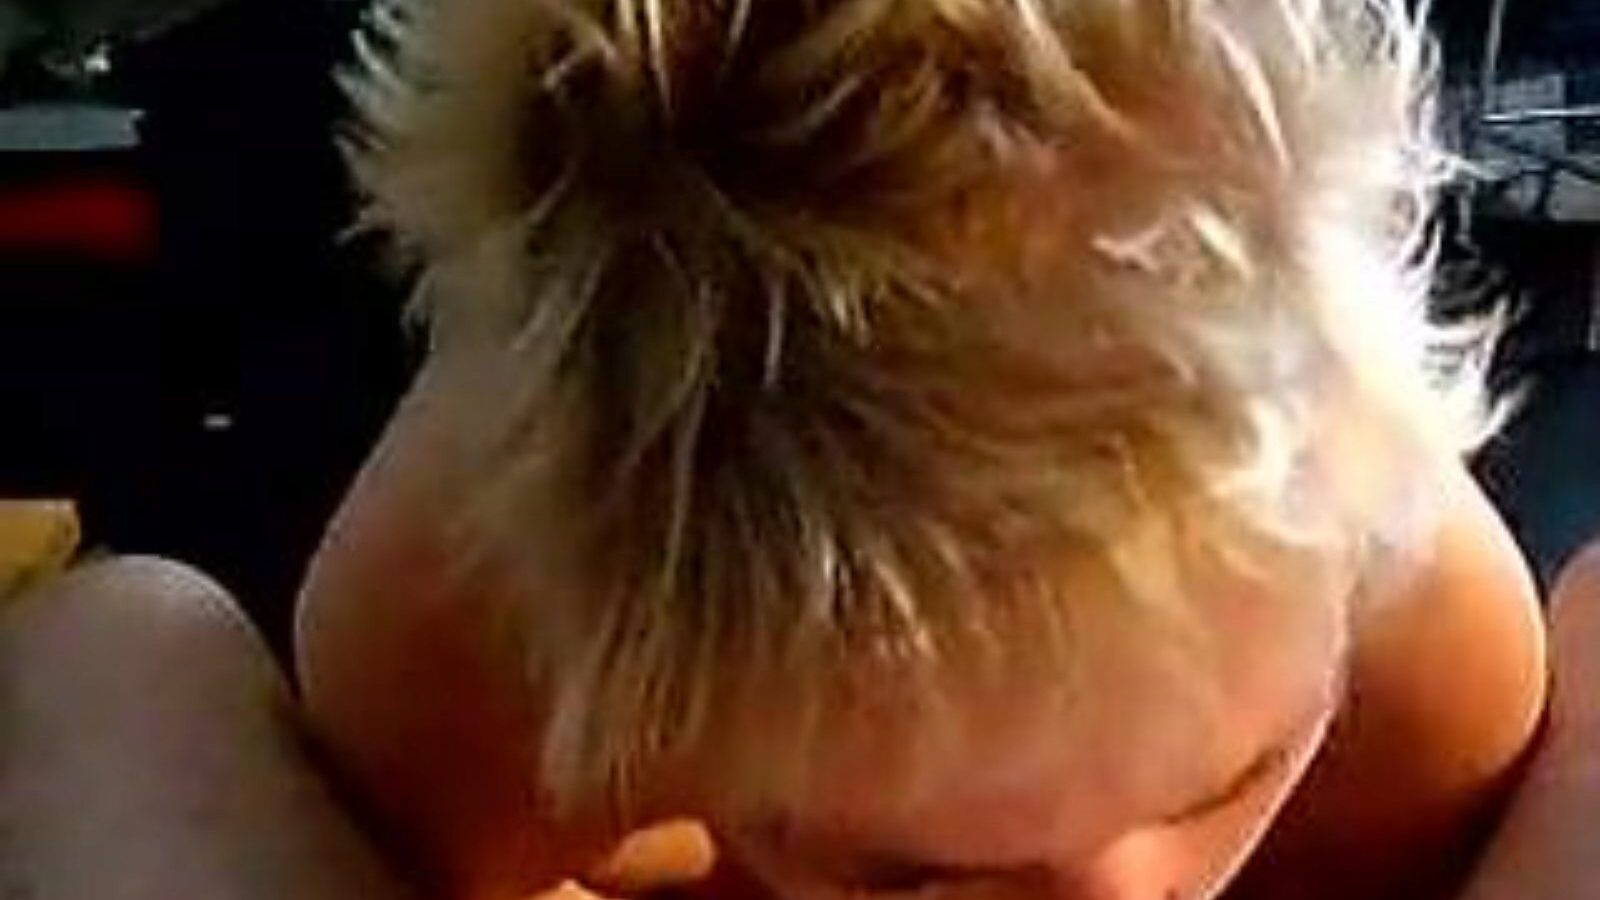 leuke dame: ev yapımı ve yaşlı kız porno video a6 - xhamster, Hollandalı ev yapımı, yaşlı kız ve emici pornografi klip konserlerinin en sıcak koleksiyonuyla, leuke dame tube seks filmini xhamster'da ücretsiz izle